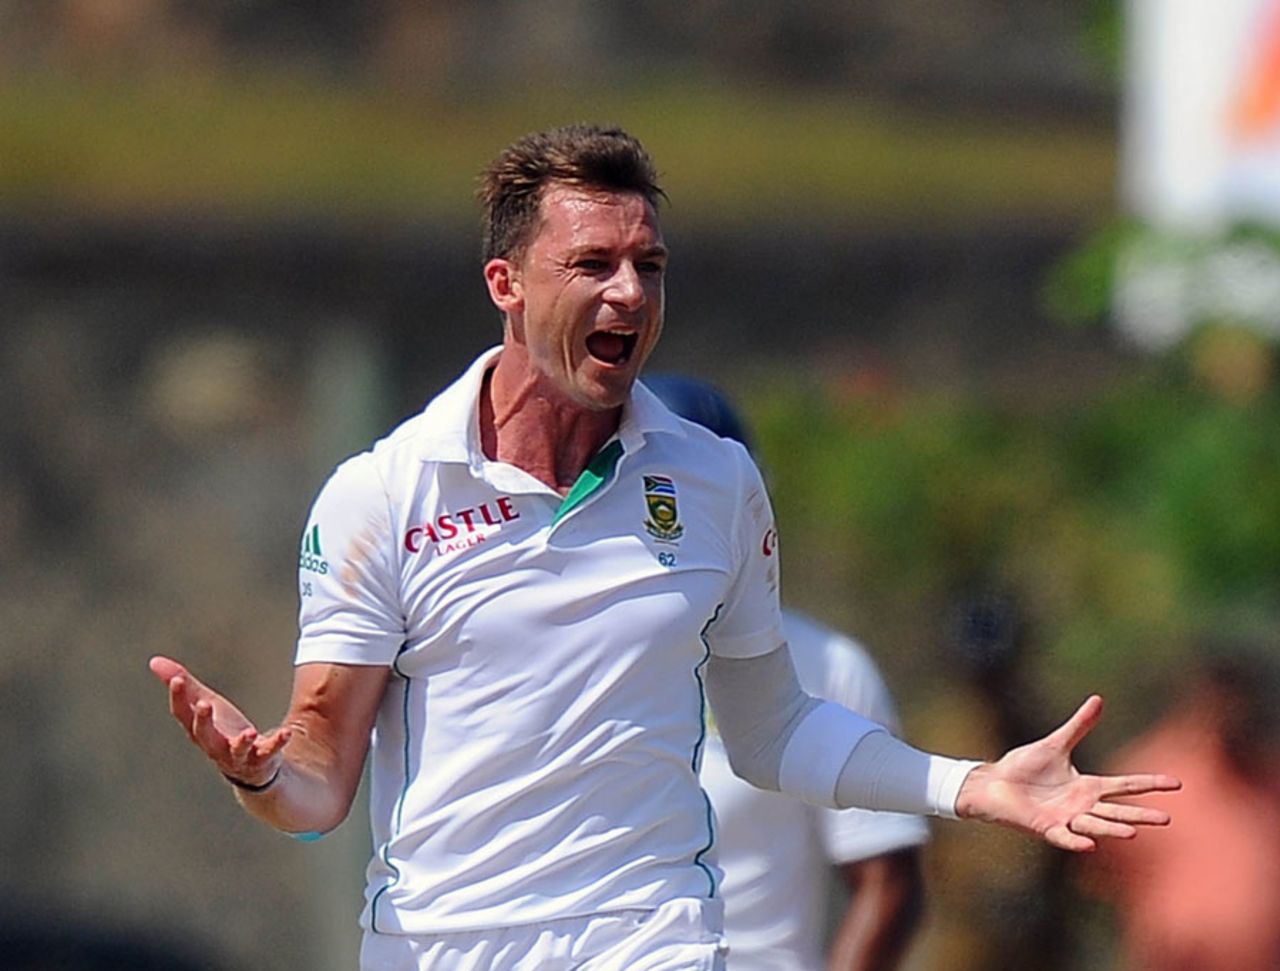 Dale Steyn celebrates after dismissing Kaushal Silva, Sri Lanka v South Africa, 1st Test, Galle, 5th day, July 20, 2014